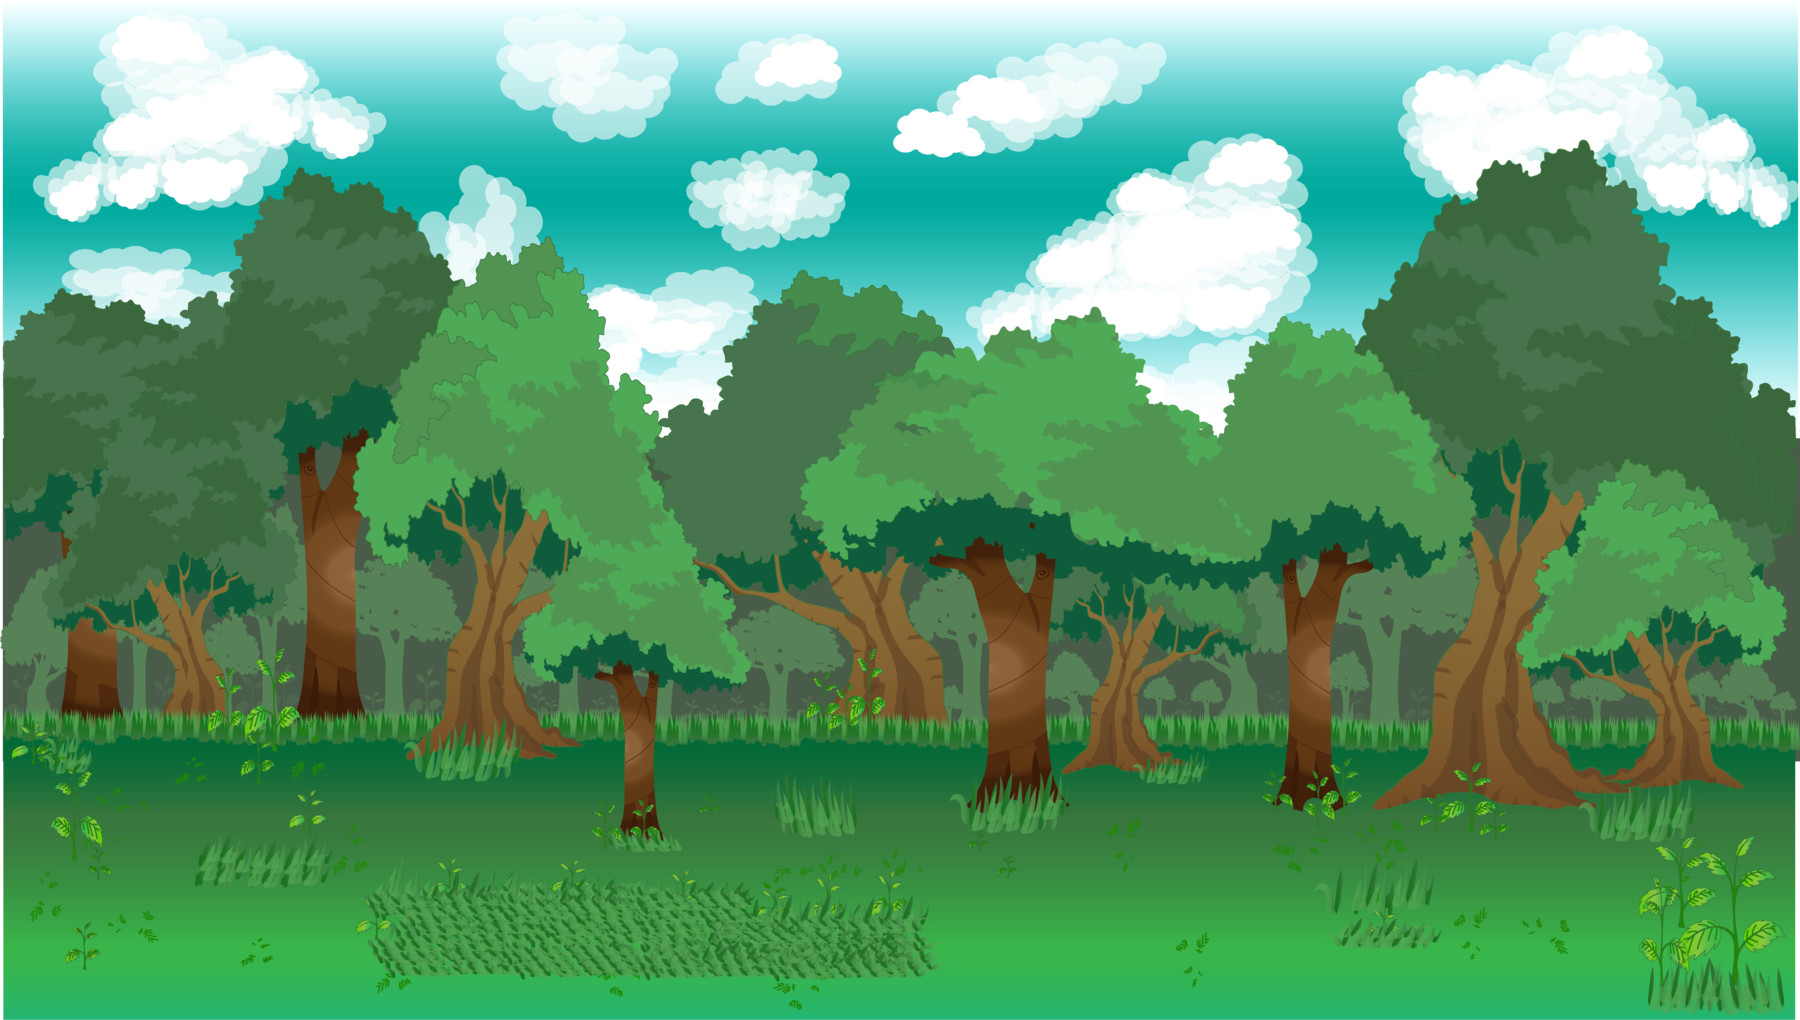 Hình nền rừng cho game 2D sẽ giúp bạn cảm thấy như đang sống trong một thế giới hoang dã đầy kỳ thú. Thiết kế chi tiết được lấy cảm hứng từ rừng rậm sẽ khiến bạn có cảm giác như mình đang đi vào một cuộc phiêu lưu đầy thử thách.